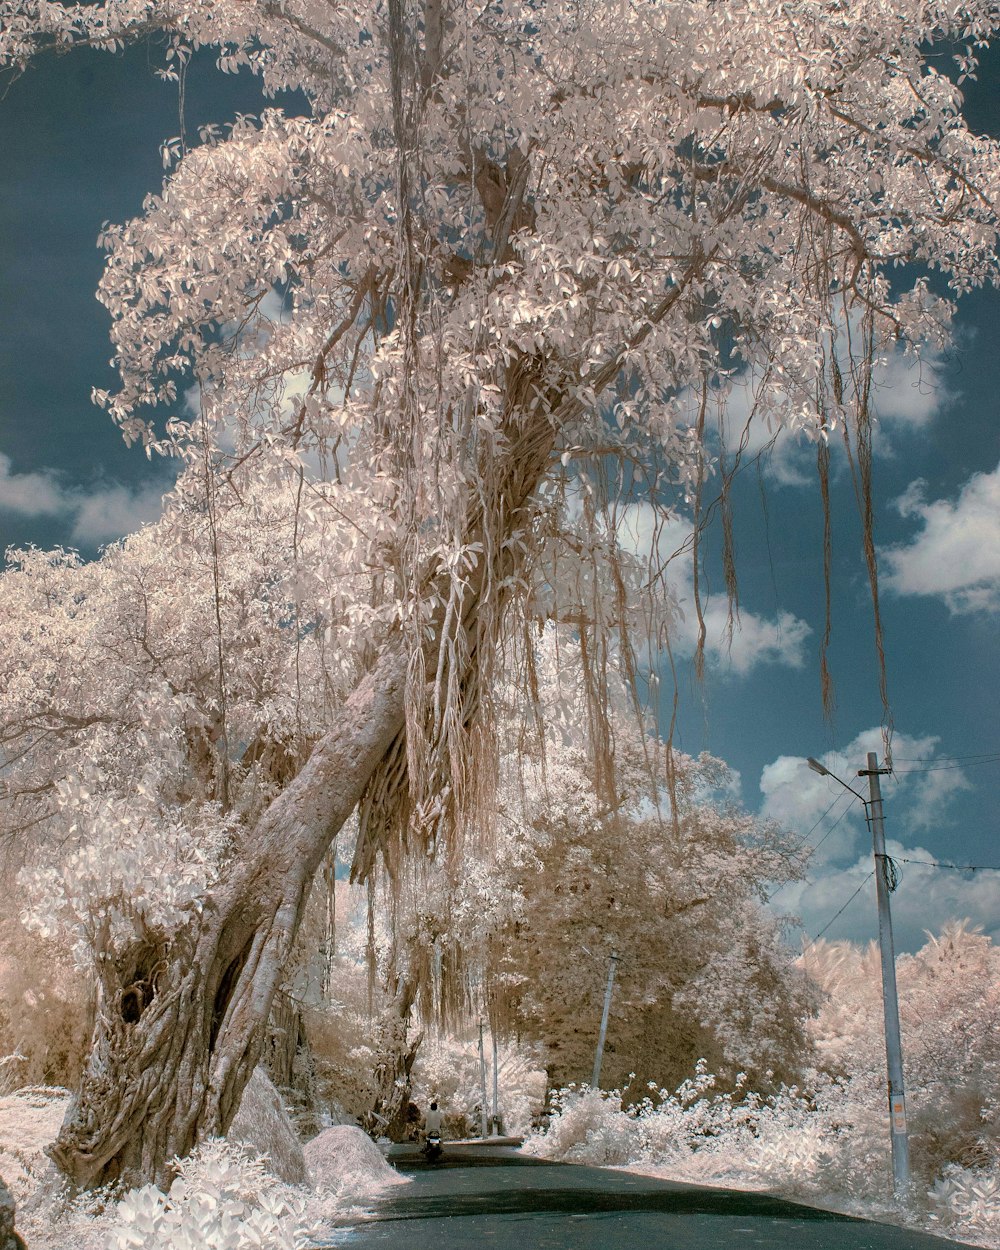 strada di cemento accanto all'albero dai petali bianchi